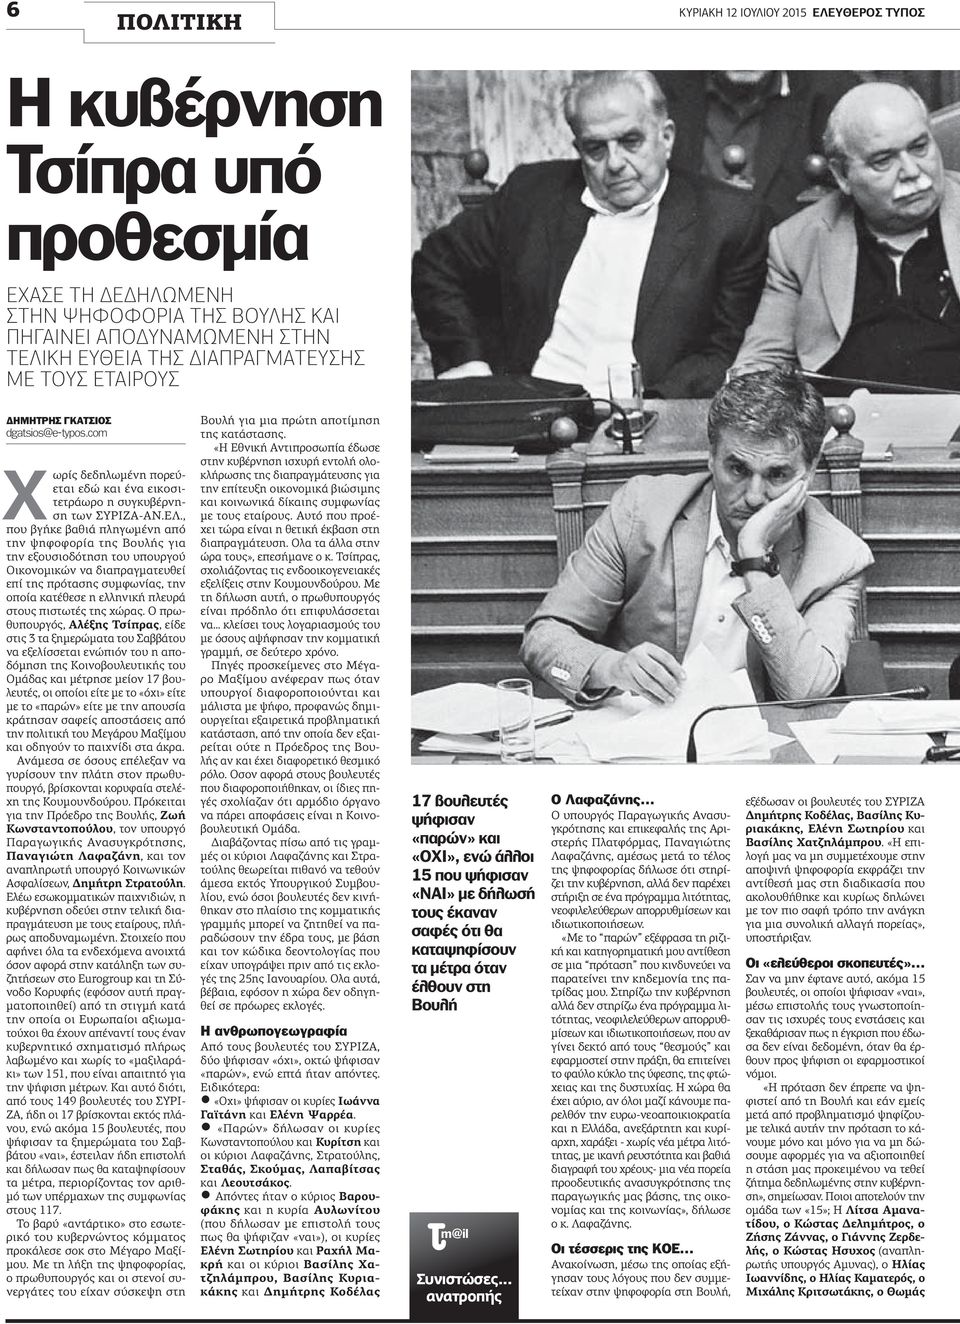 , που βγήκε βαθιά πληγωμένη από την ψηφοφορία της Βουλής για την εξουσιοδότηση του υπουργού Οικονομικών να διαπραγματευθεί επί της πρότασης συμφωνίας, την οποία κατέθεσε η ελληνική πλευρά στους